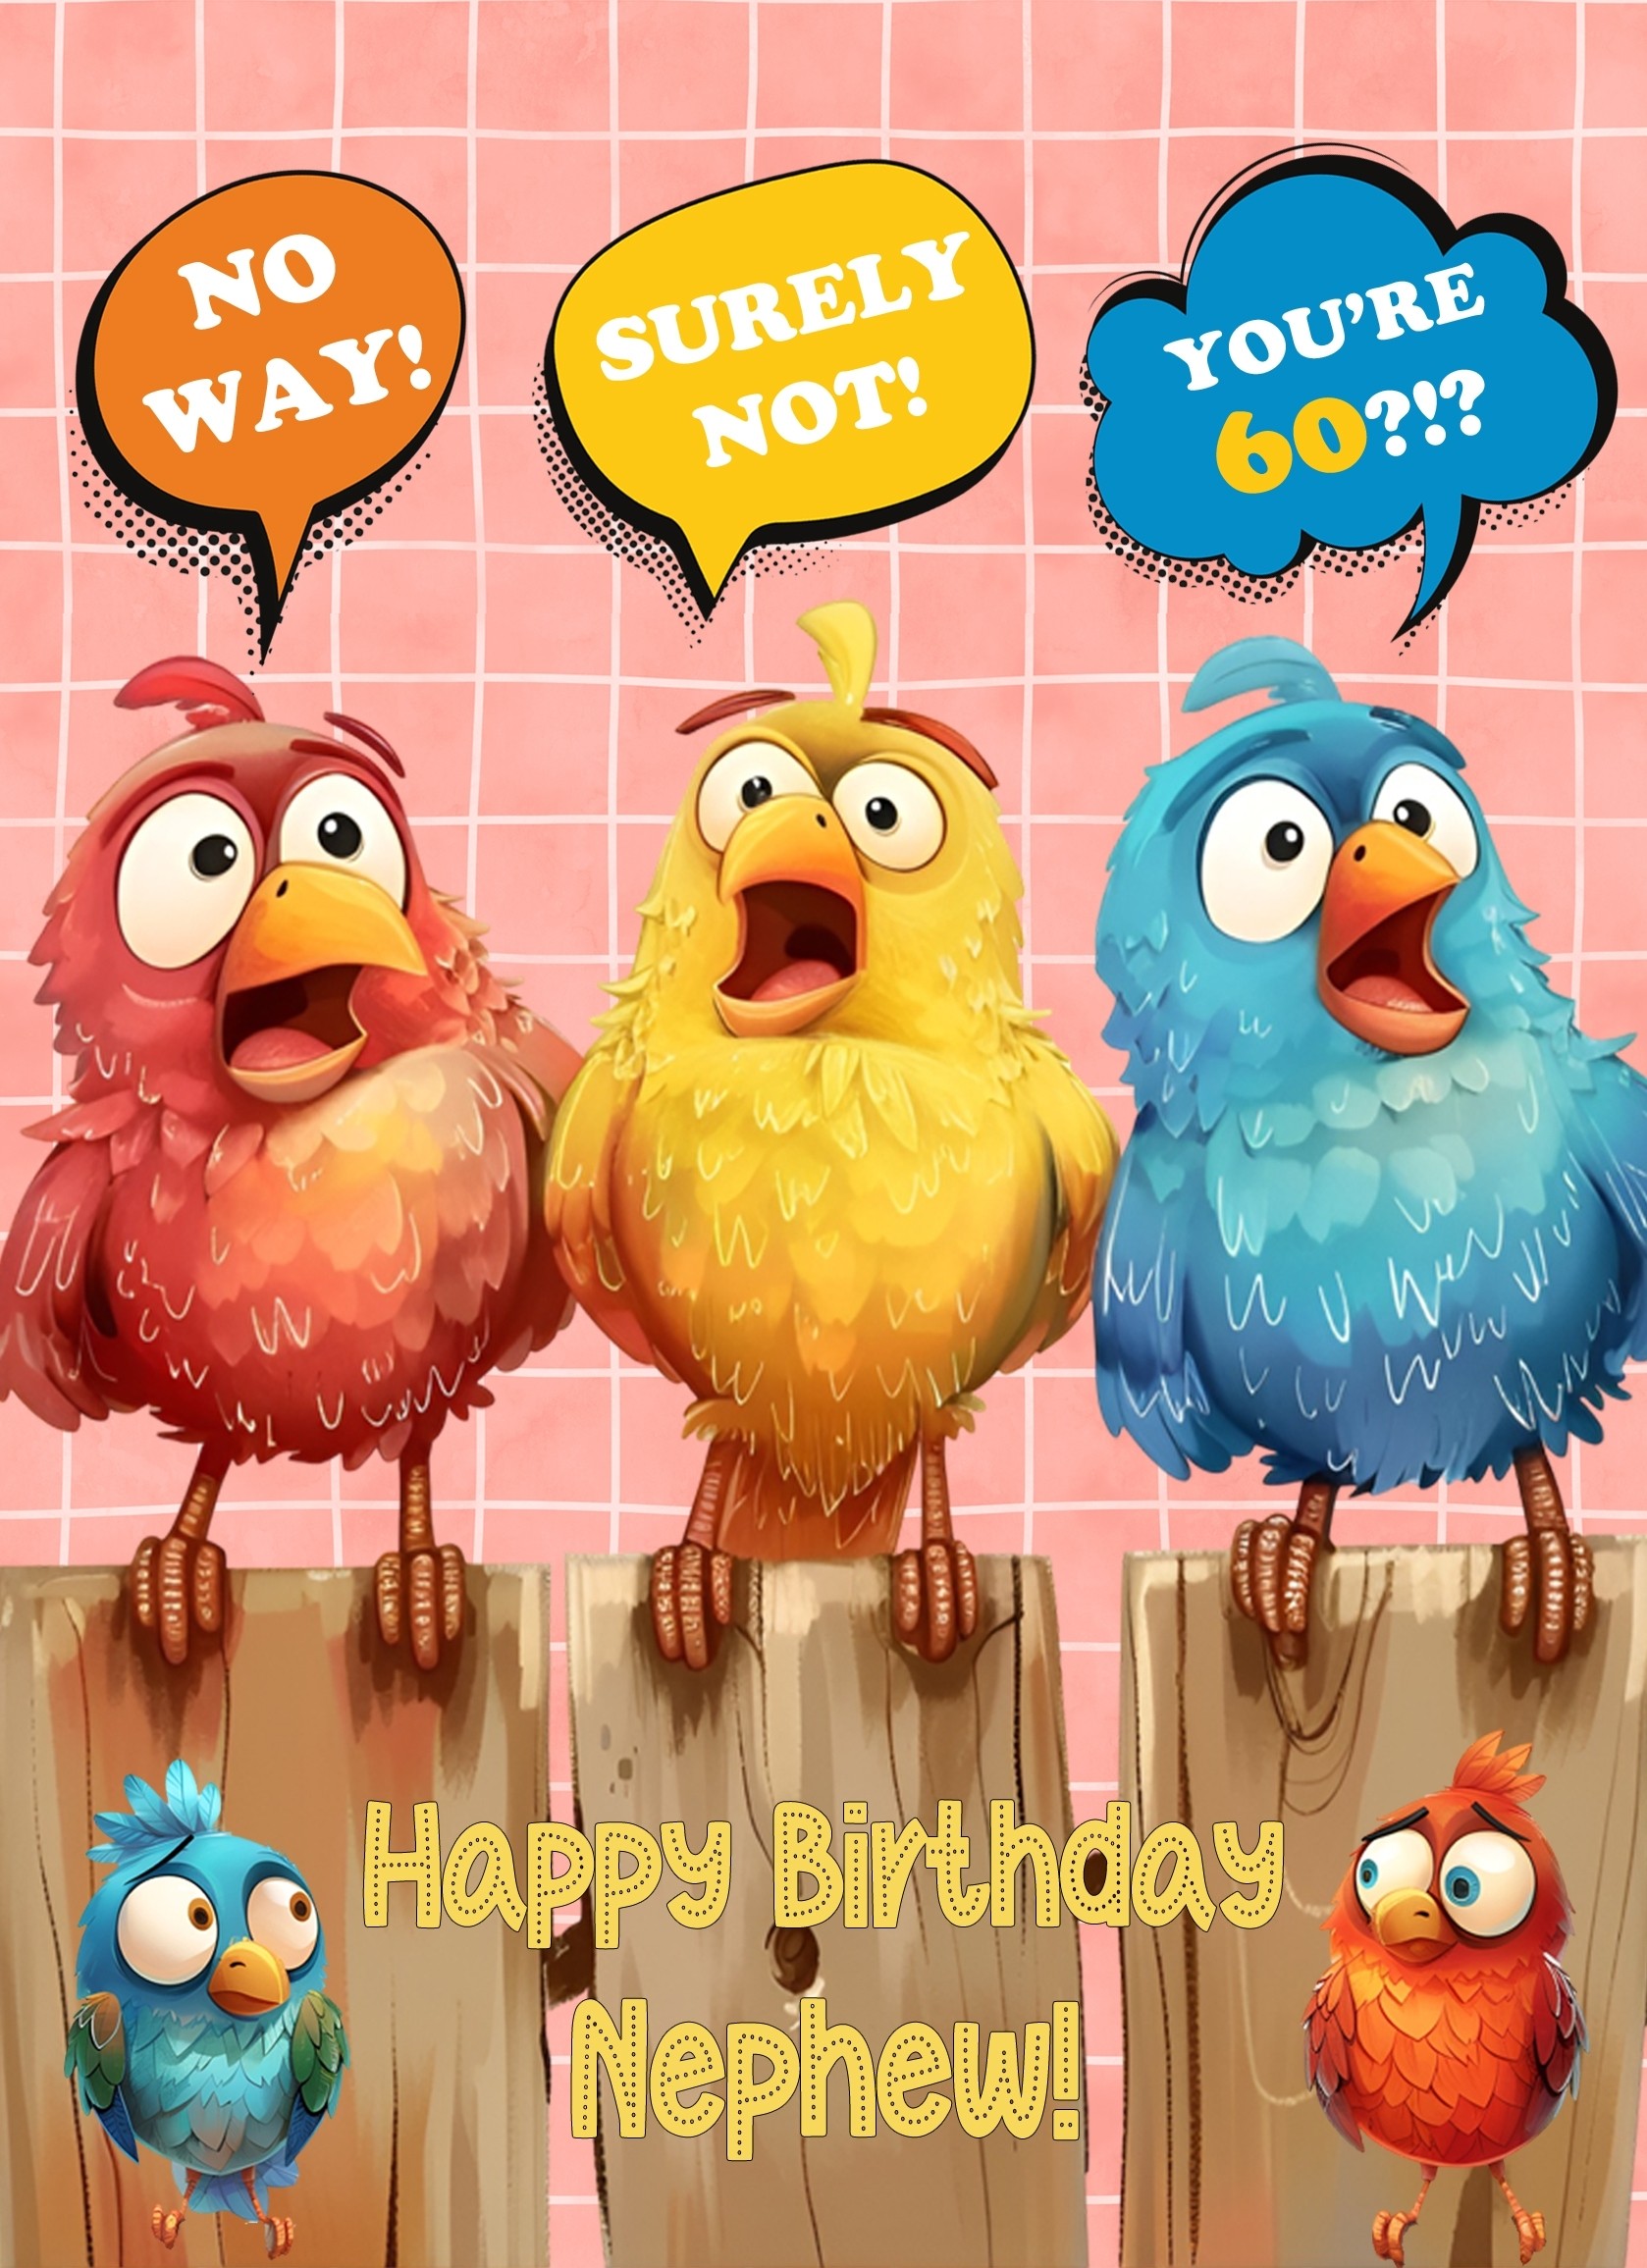 Nephew 60th Birthday Card (Funny Birds Surprised)